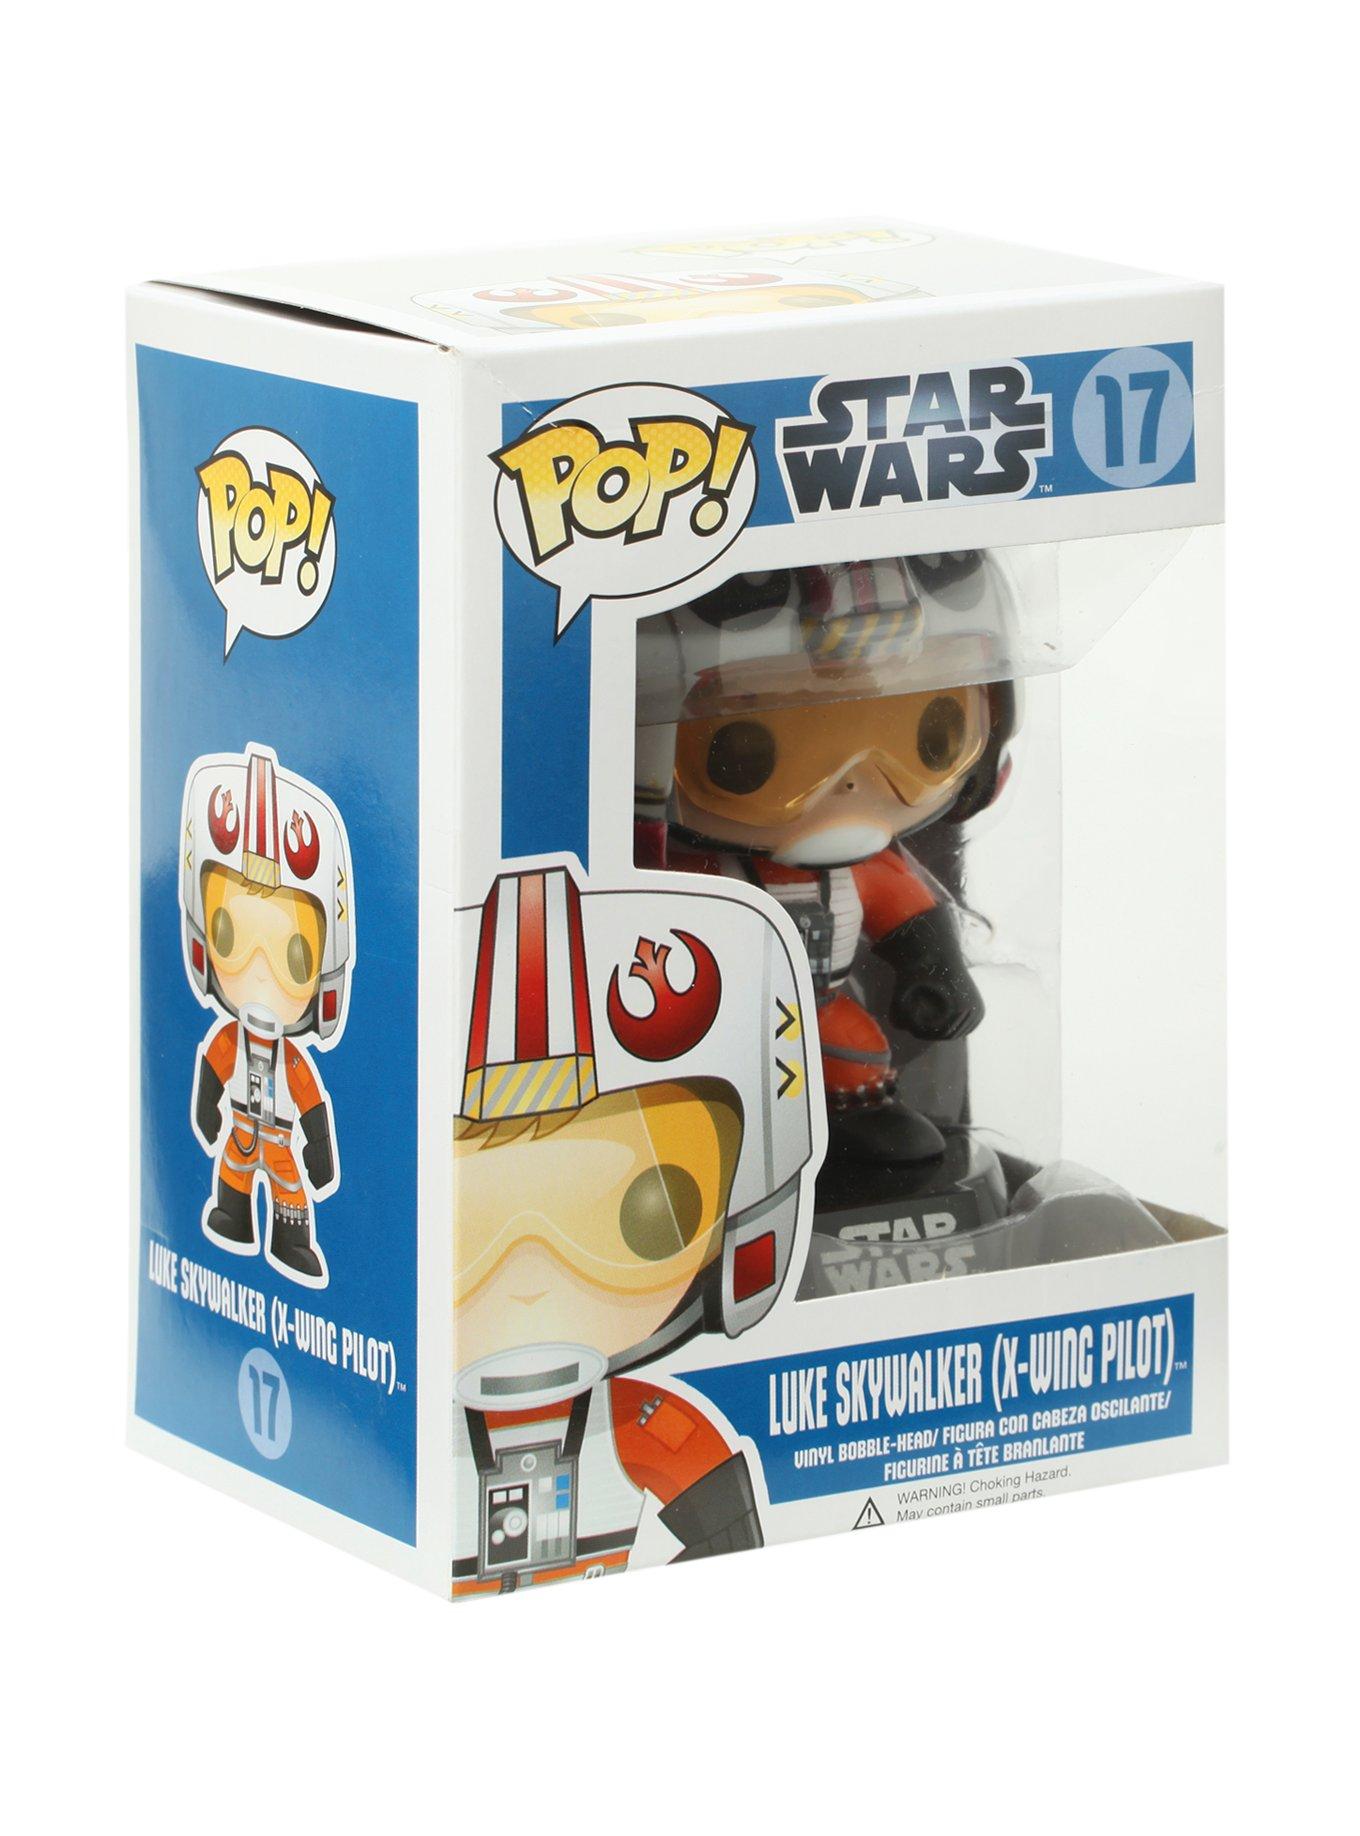 Star Wars Vinyl Bobble-Head Figure w/ Stand for sale online : ~3.75 Funko POP X-Wing Pilot Luke Skywalker 